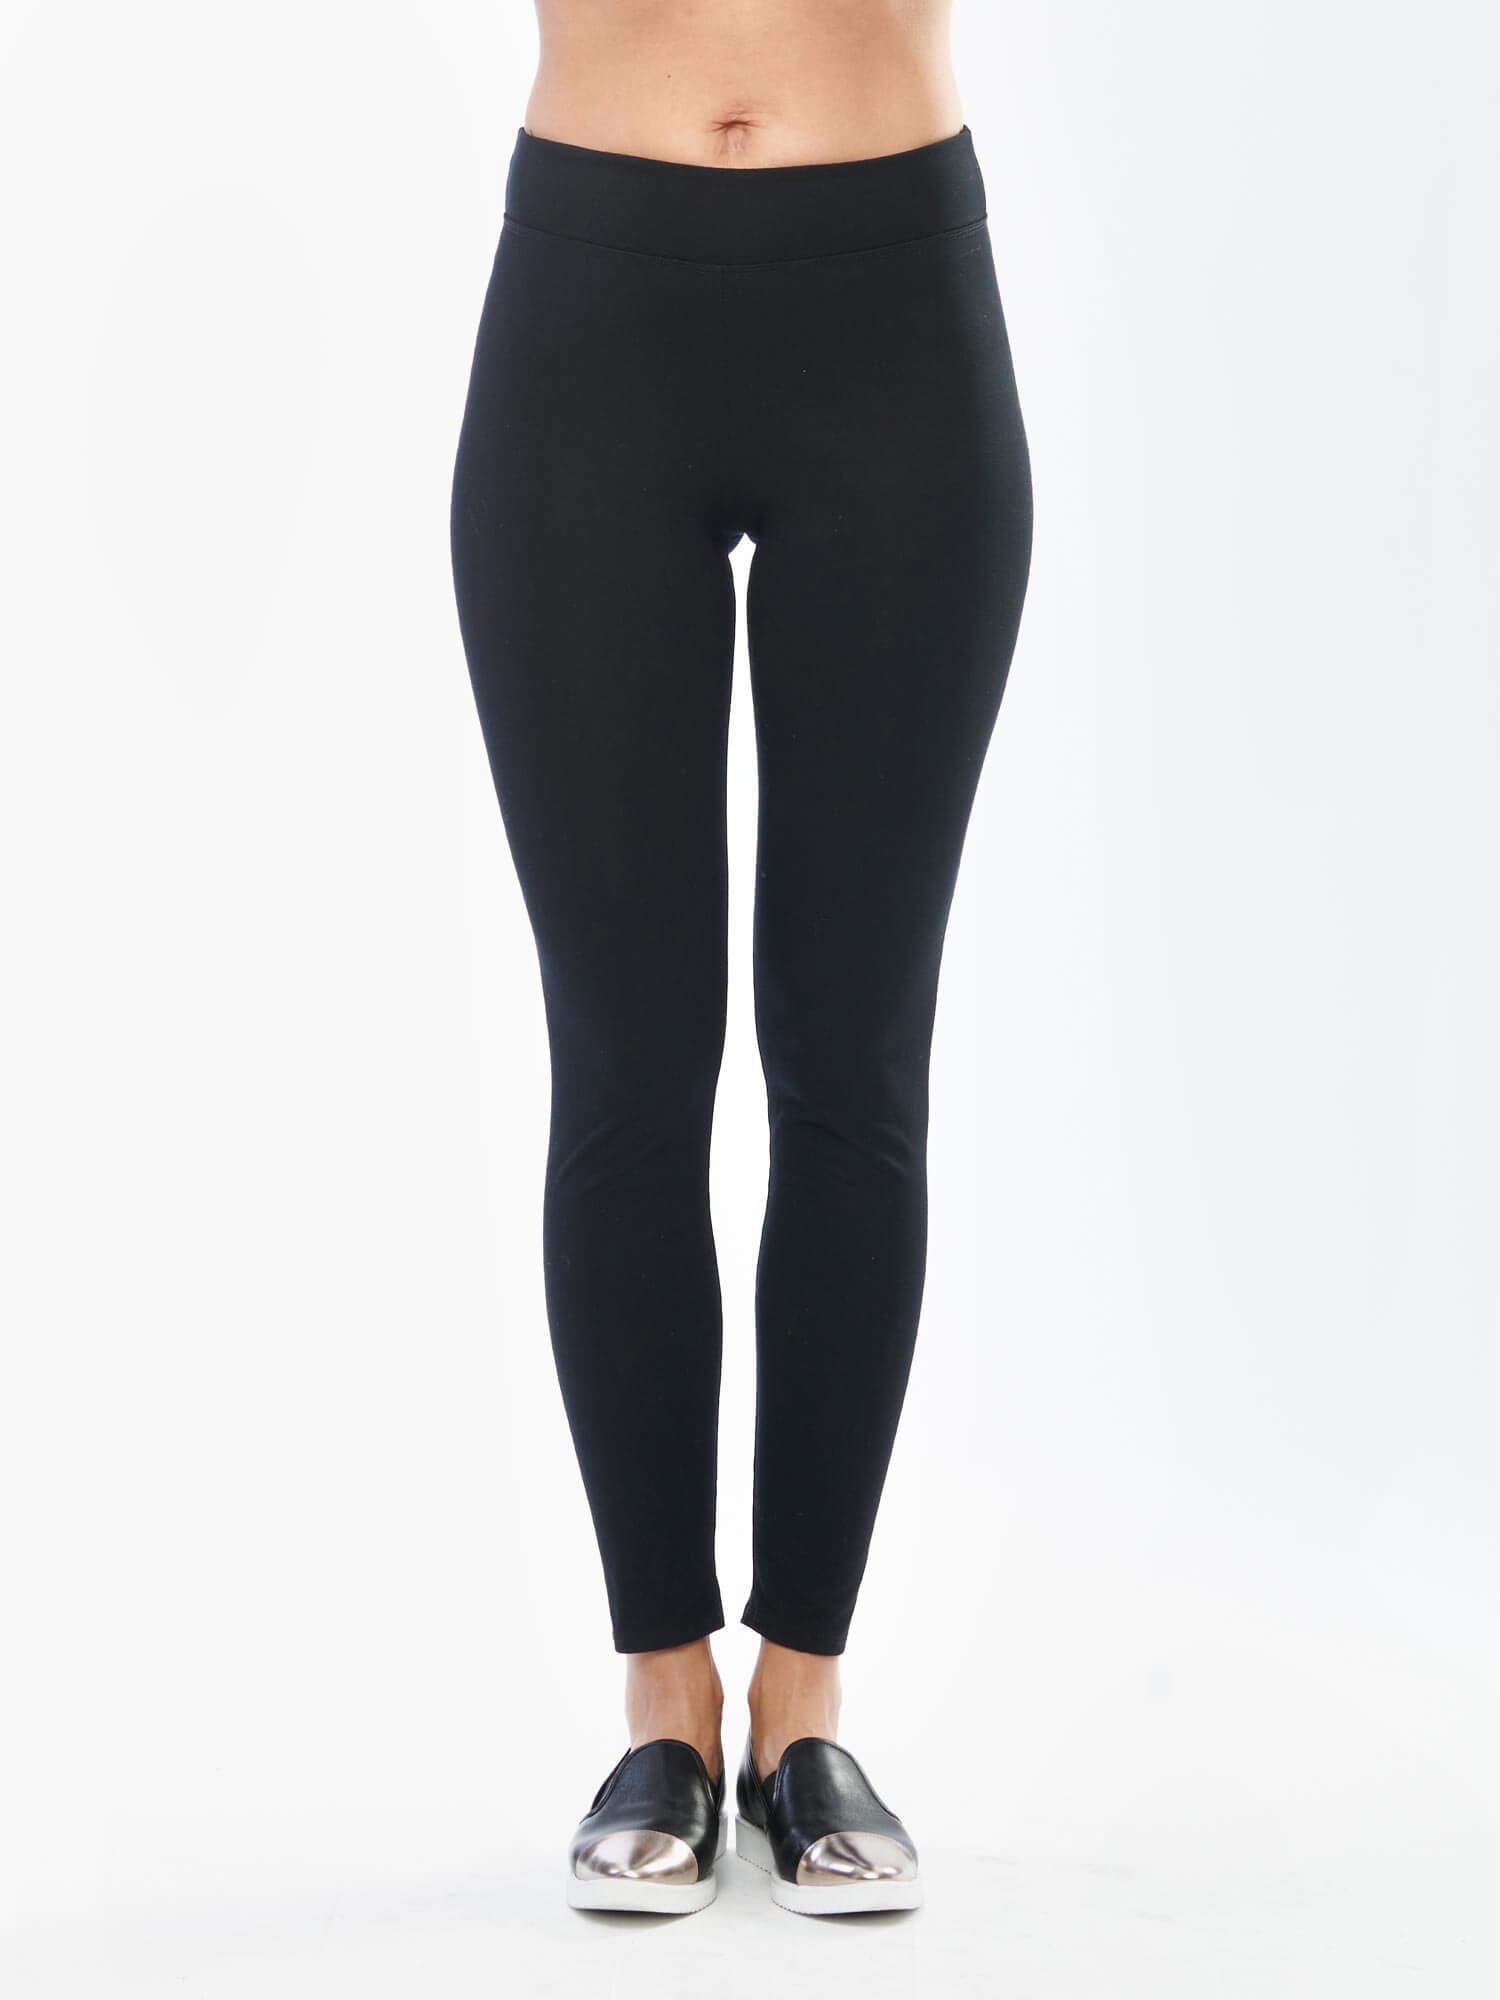 Lucy Activewear Powermax Black Perfect Core Pants, Full Length, Size Medium  - Conseil scolaire francophone de Terre-Neuve et Labrador